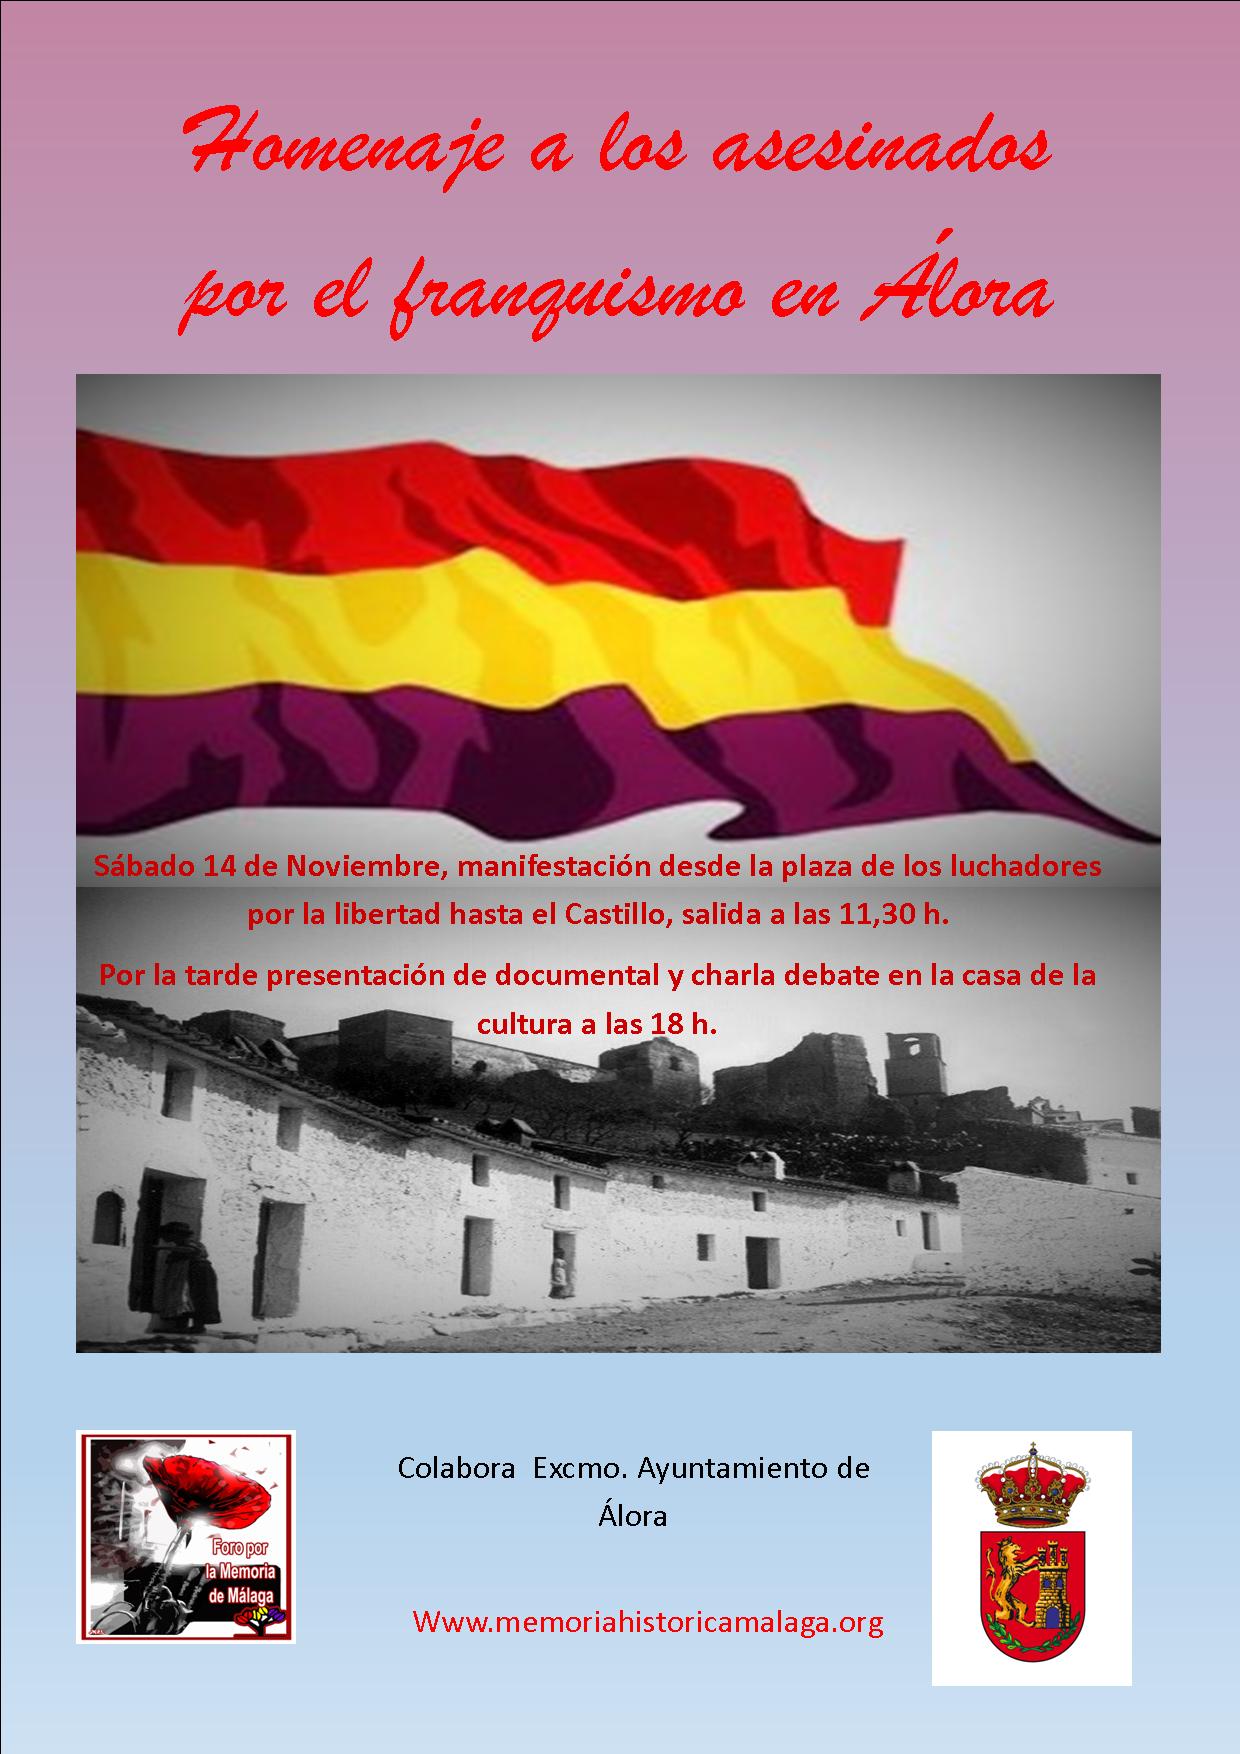 Manifestación y Homenaje a los asesinados por el franquismo en Álora